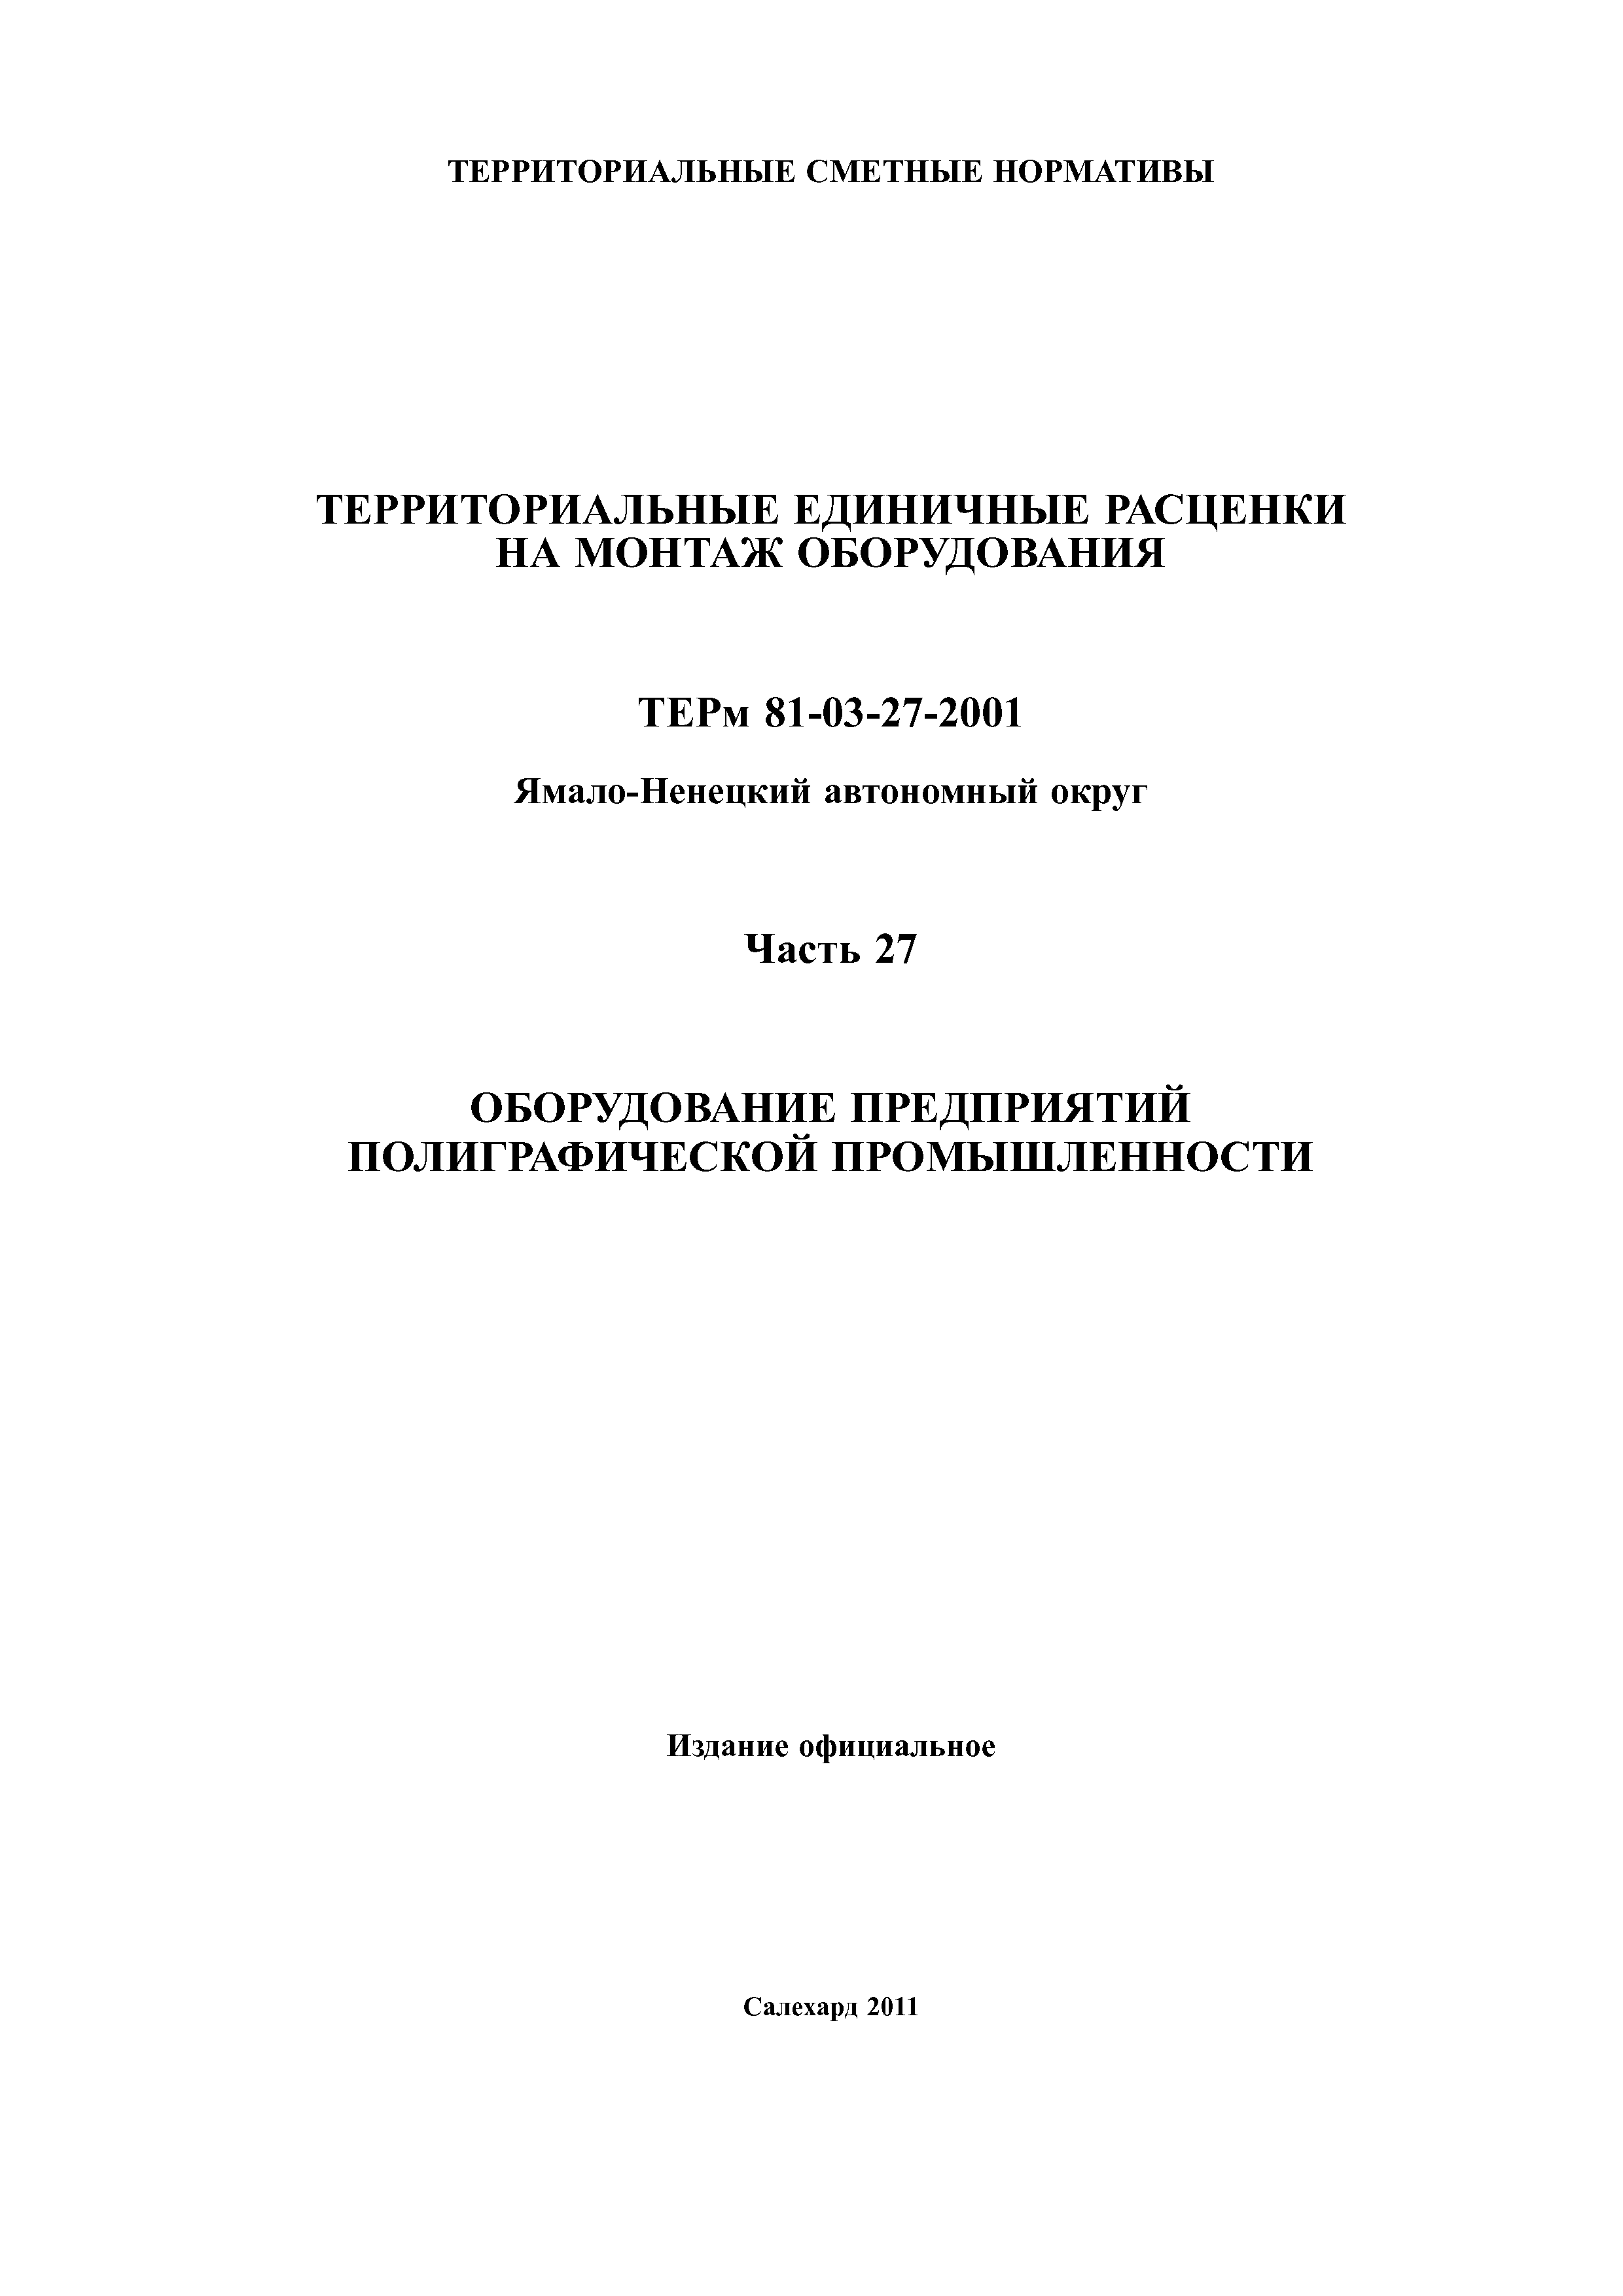 ТЕРм Ямало-Ненецкий автономный округ 27-2001